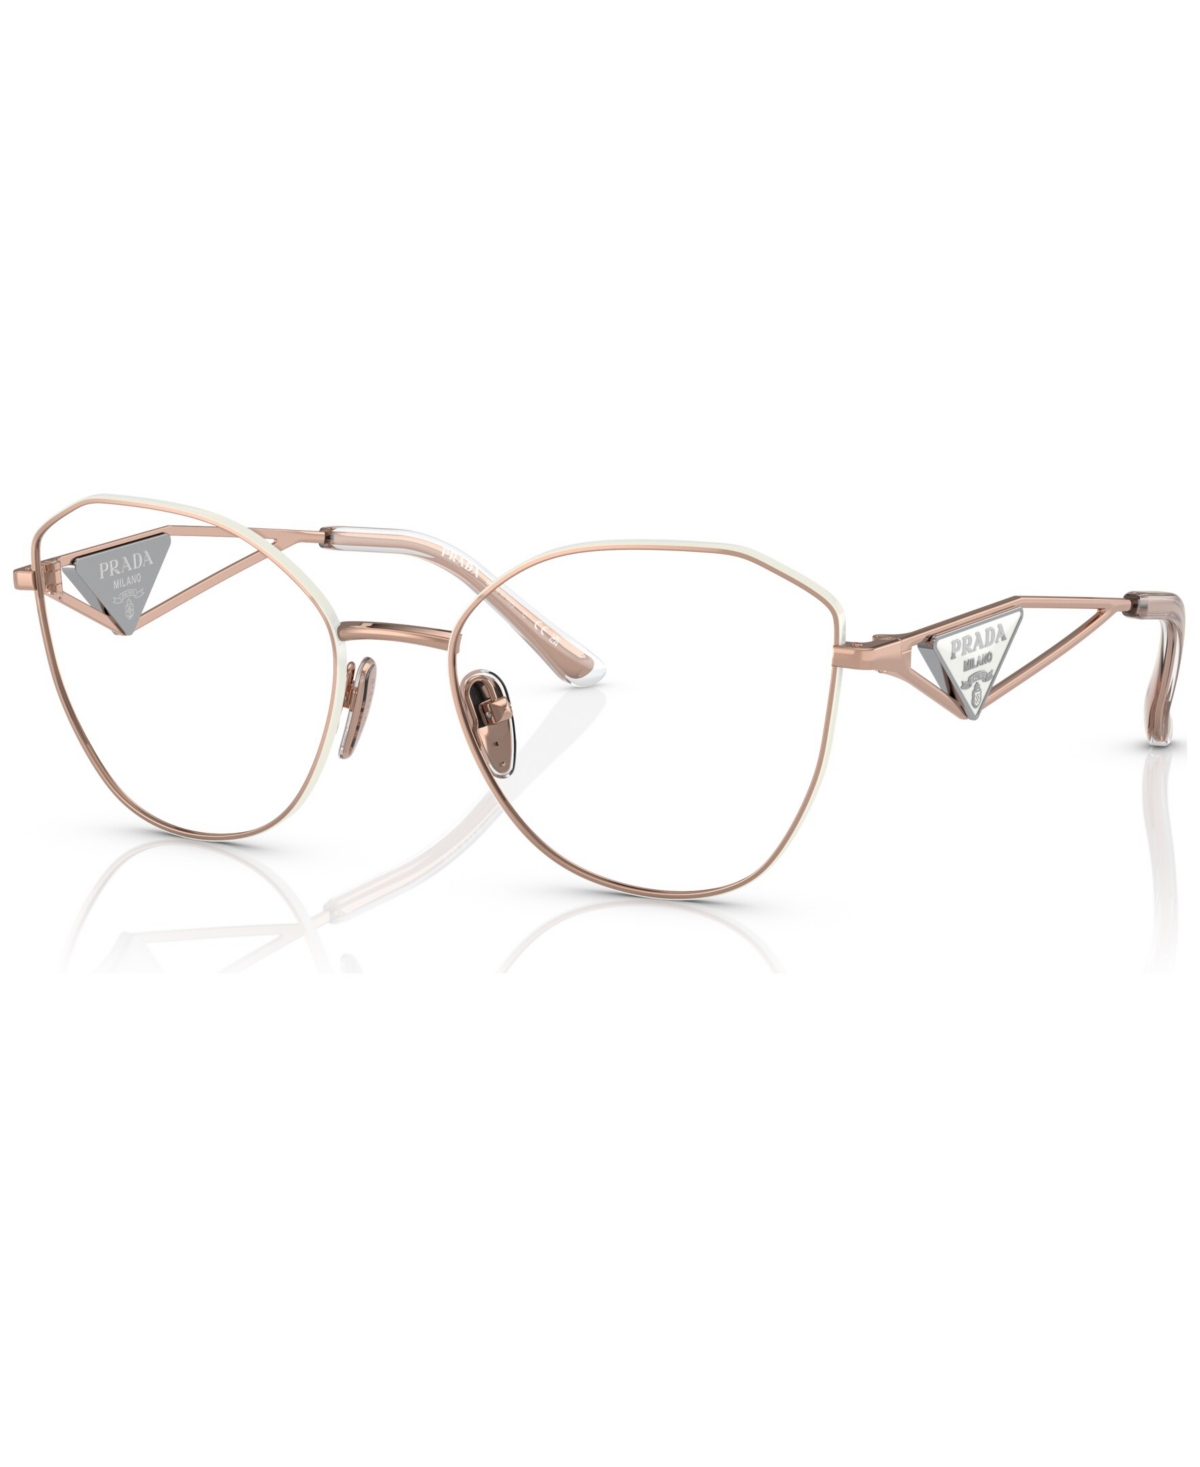 Women's Irregular Eyeglasses, Pr 52ZV53-o - Pink Gold-Tone